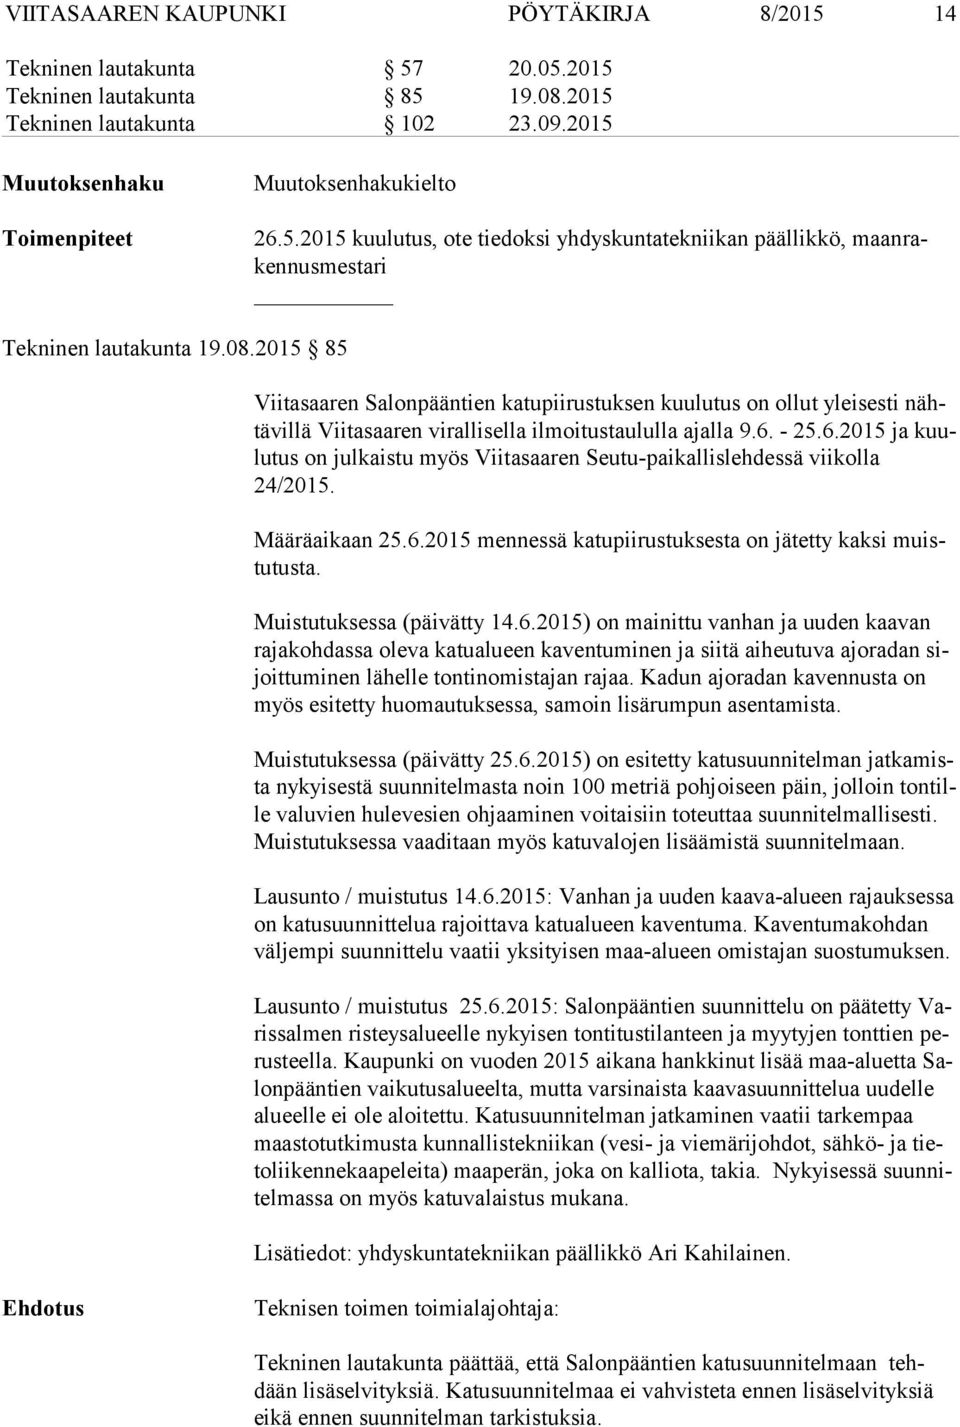 - 25.6.2015 ja kuulu tus on julkaistu myös Viitasaaren Seutu-paikallislehdessä viikolla 24/2015. Määräaikaan 25.6.2015 mennessä katupiirustuksesta on jätetty kaksi muistu tus ta.